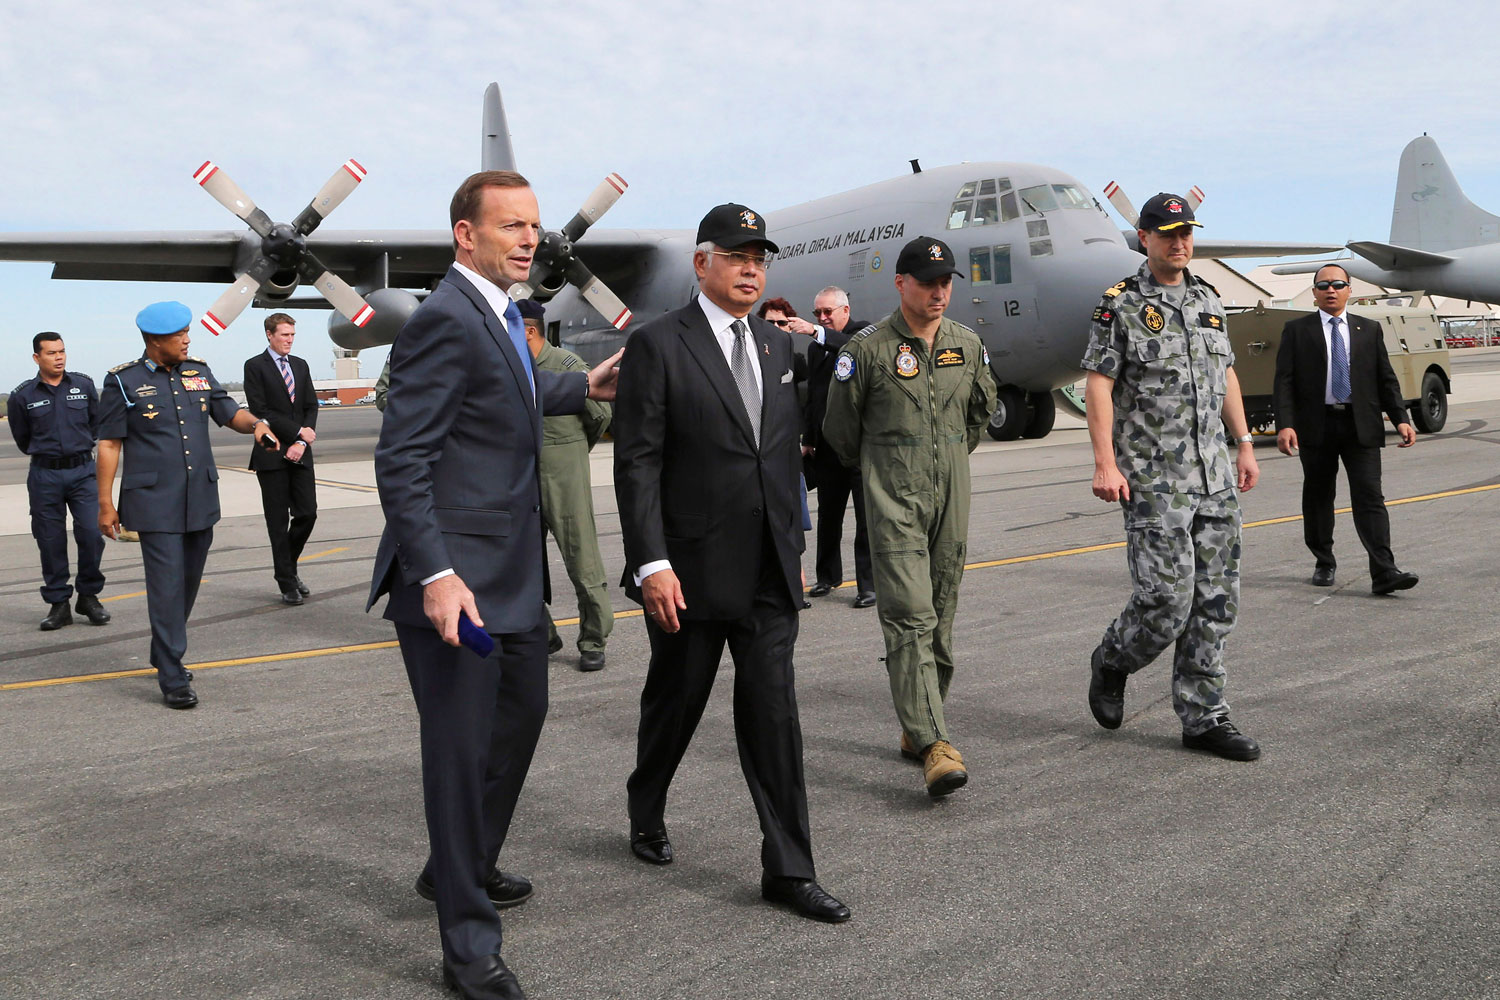 Australia's Prime Minister Tony Abbott and Malaysia's Prime Minister Najib Razak